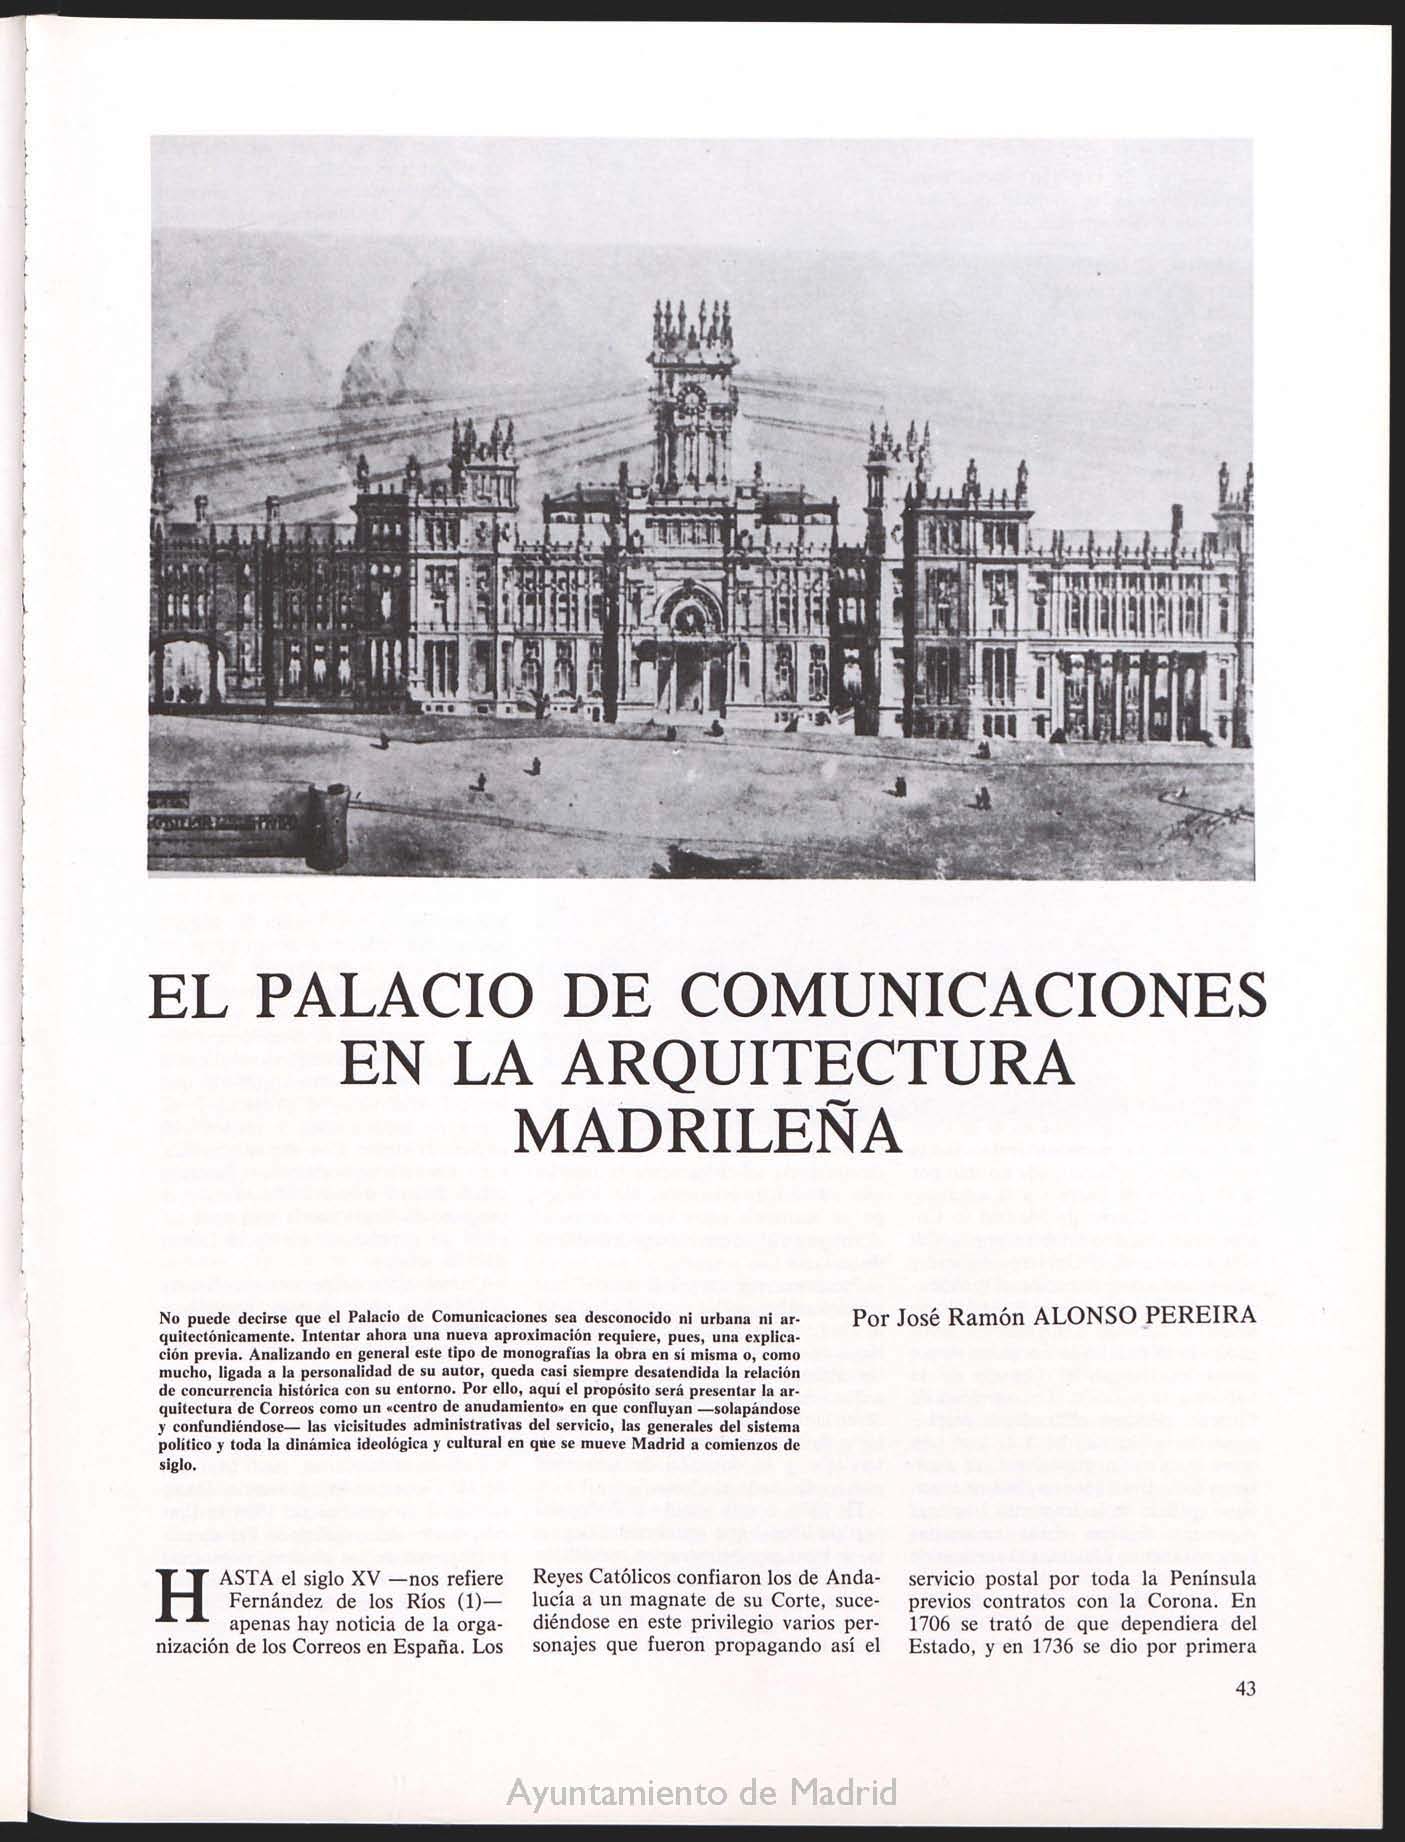 El Palacio de Comunicaciones en la arquitectura madrilea

